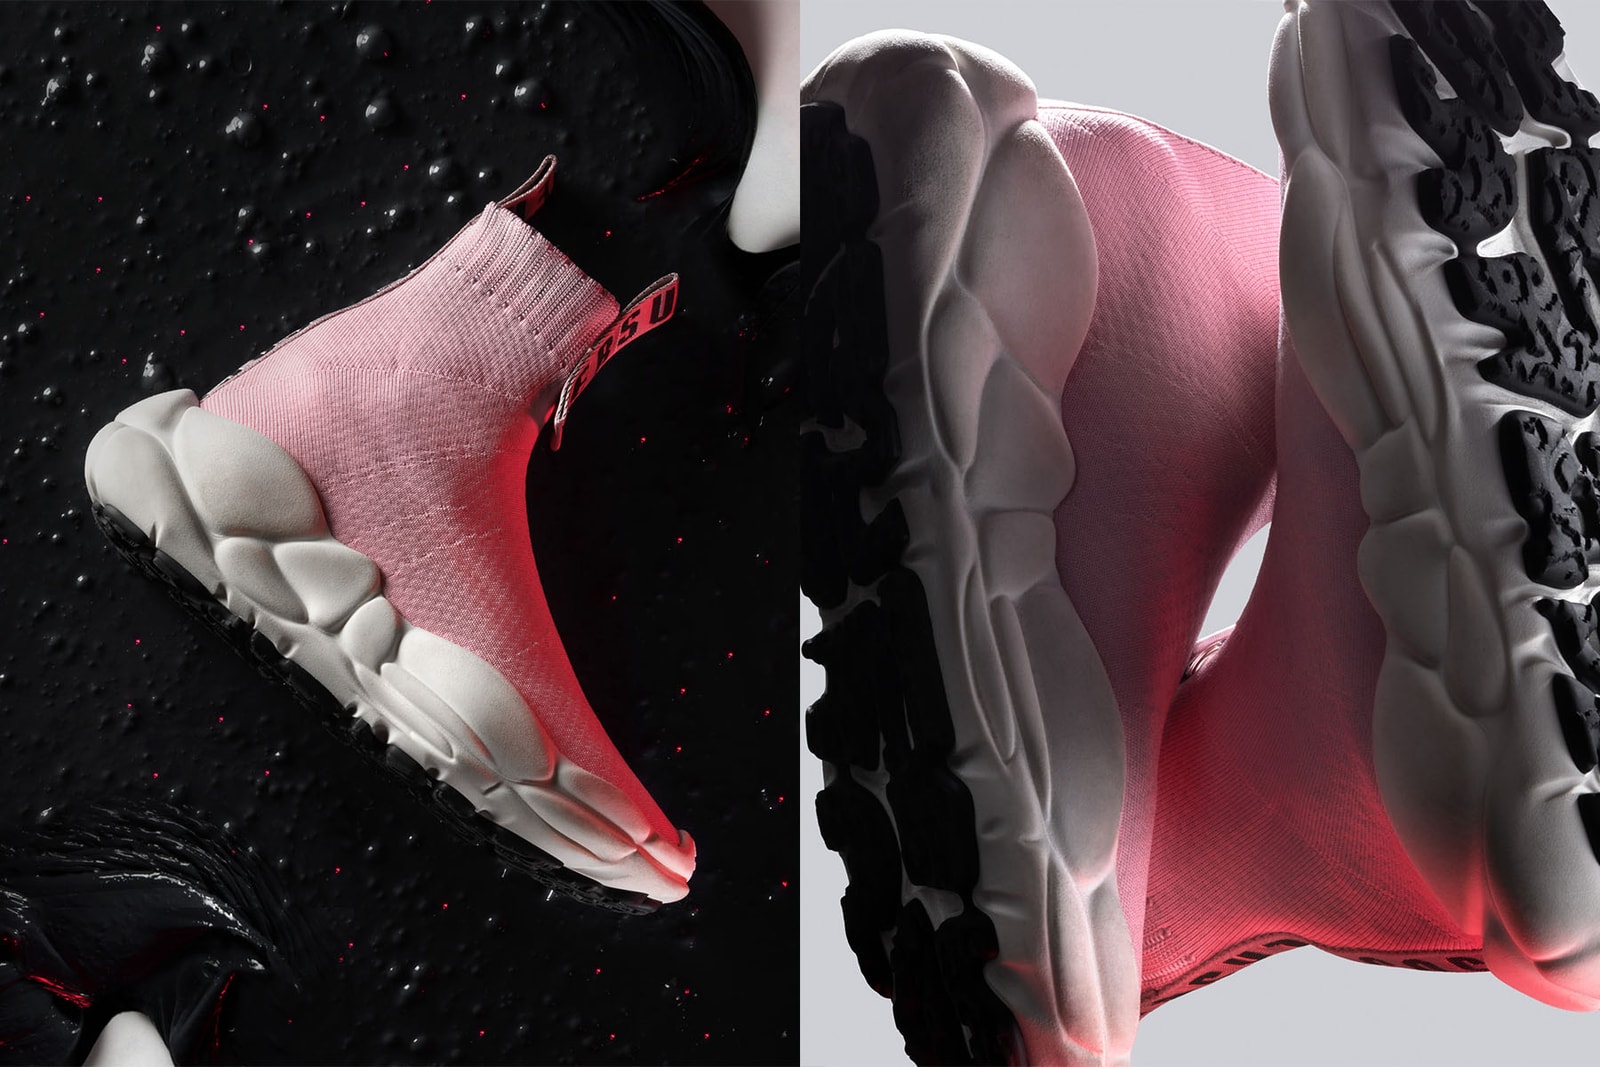 Versus Versace 2018 秋冬帶來全新注目鞋款 Versus Anatomia